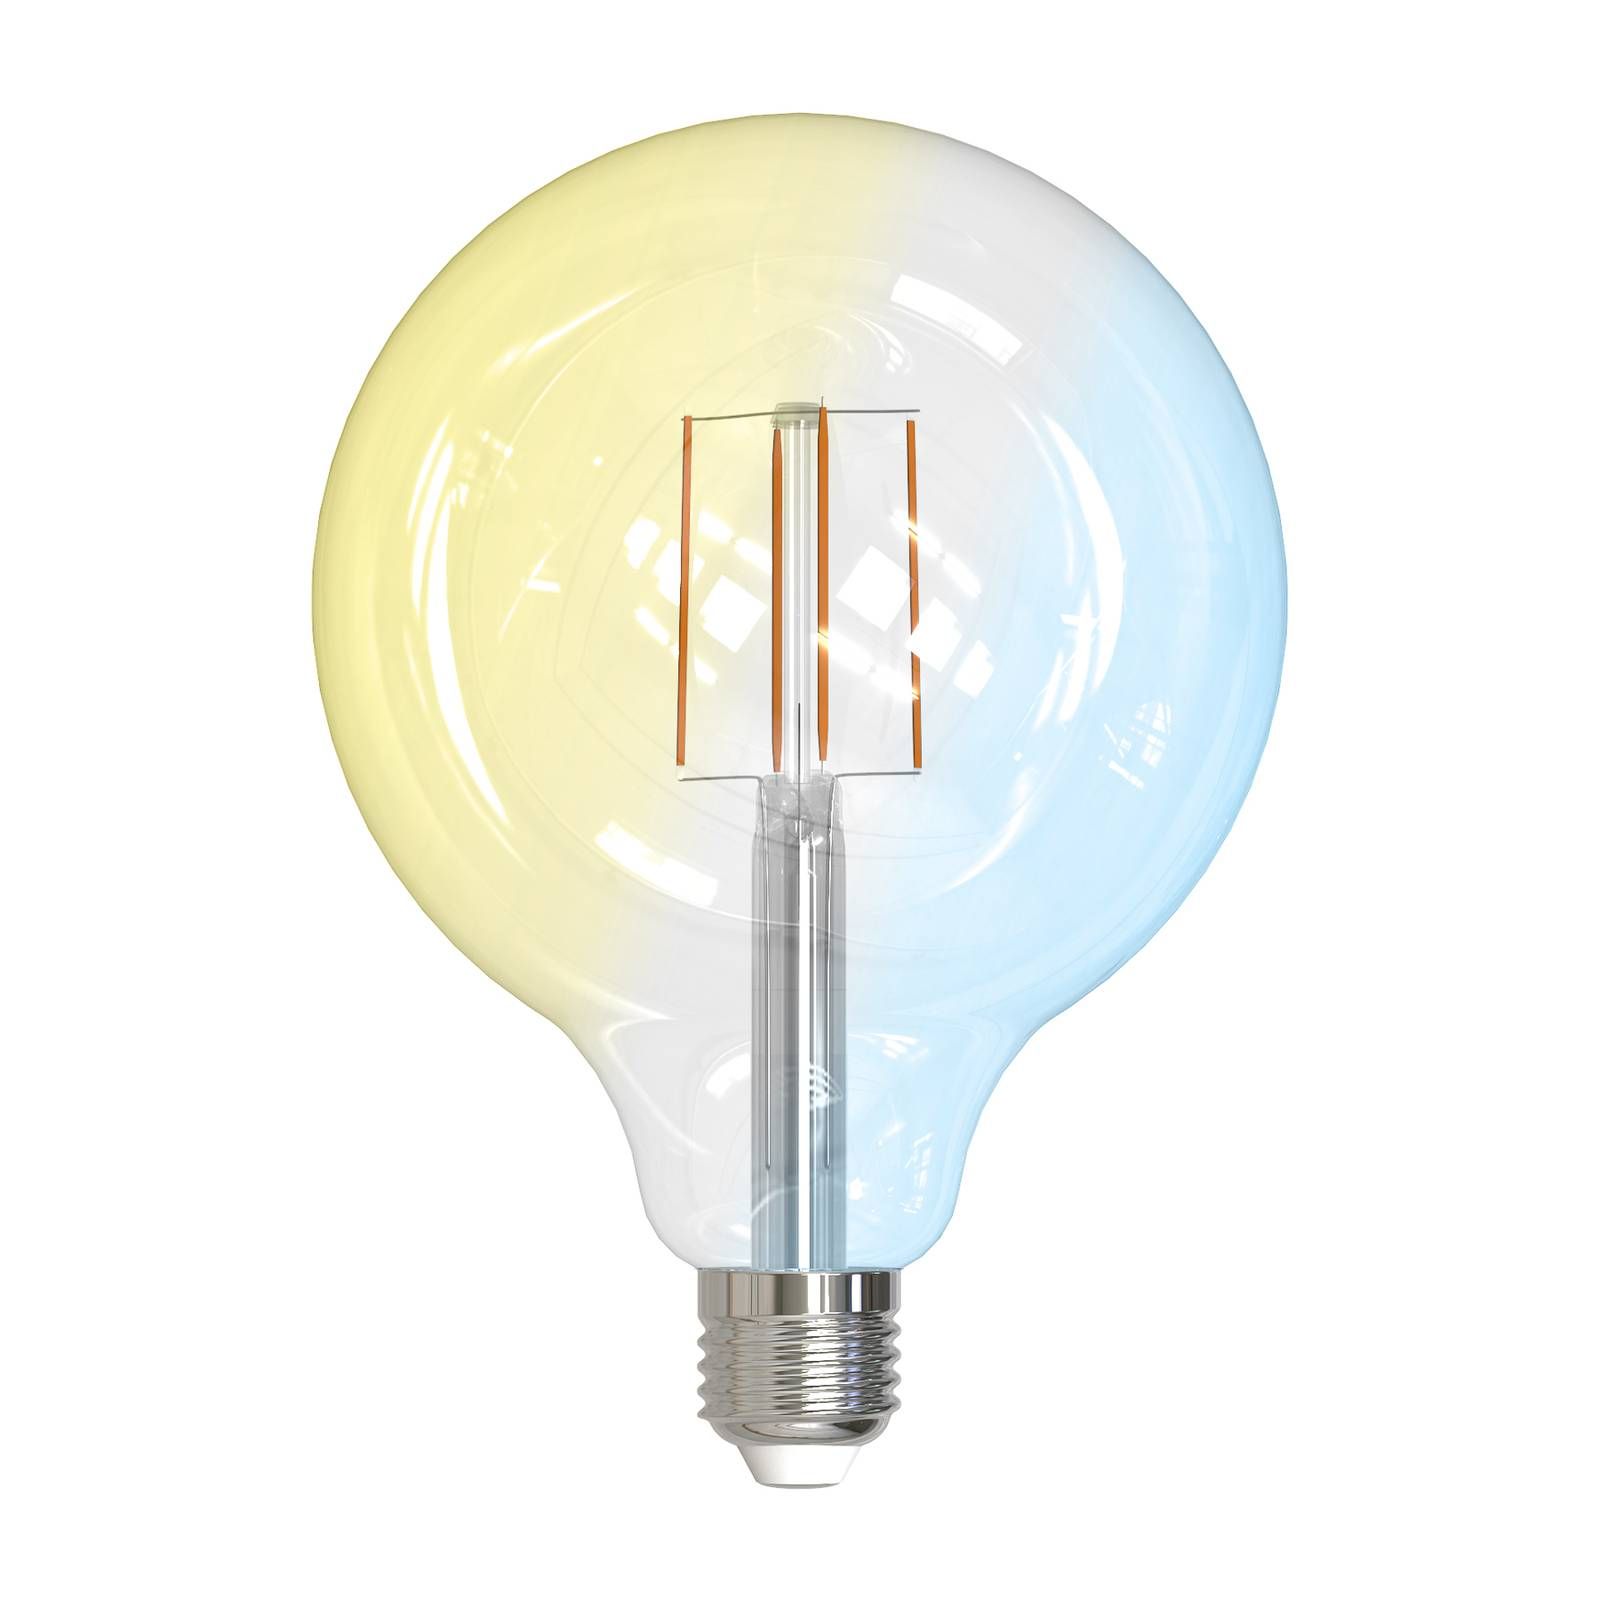 PRIOS Smart LED E27 G125 7W WLAN číra tunable white, sklo, E27, 7W, Energialuokka: E, P: 17.2 cm